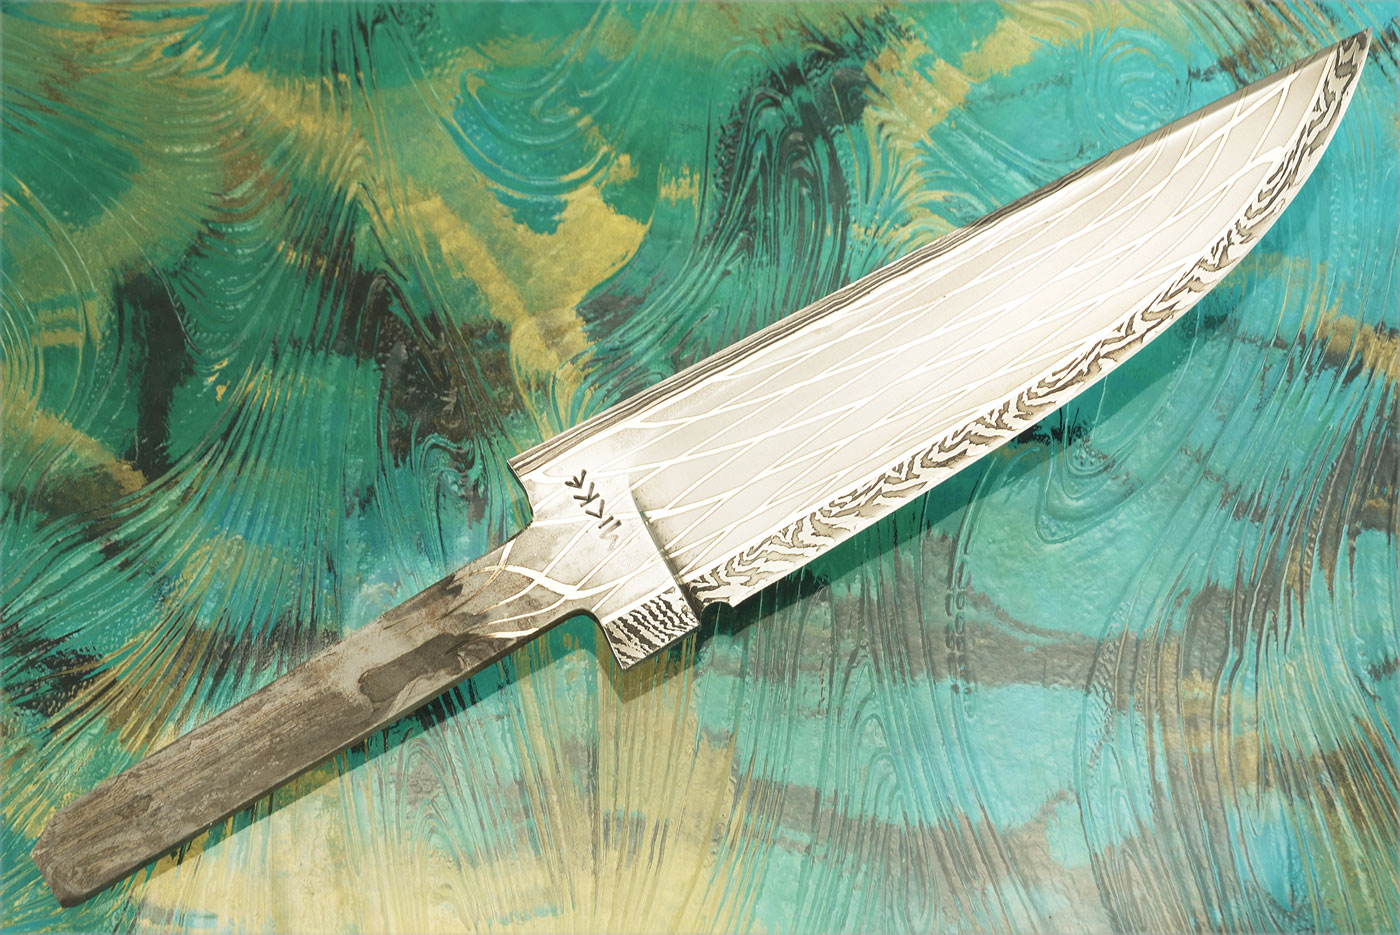 Multi-bar Damascus Blade (5-1/4 inch)